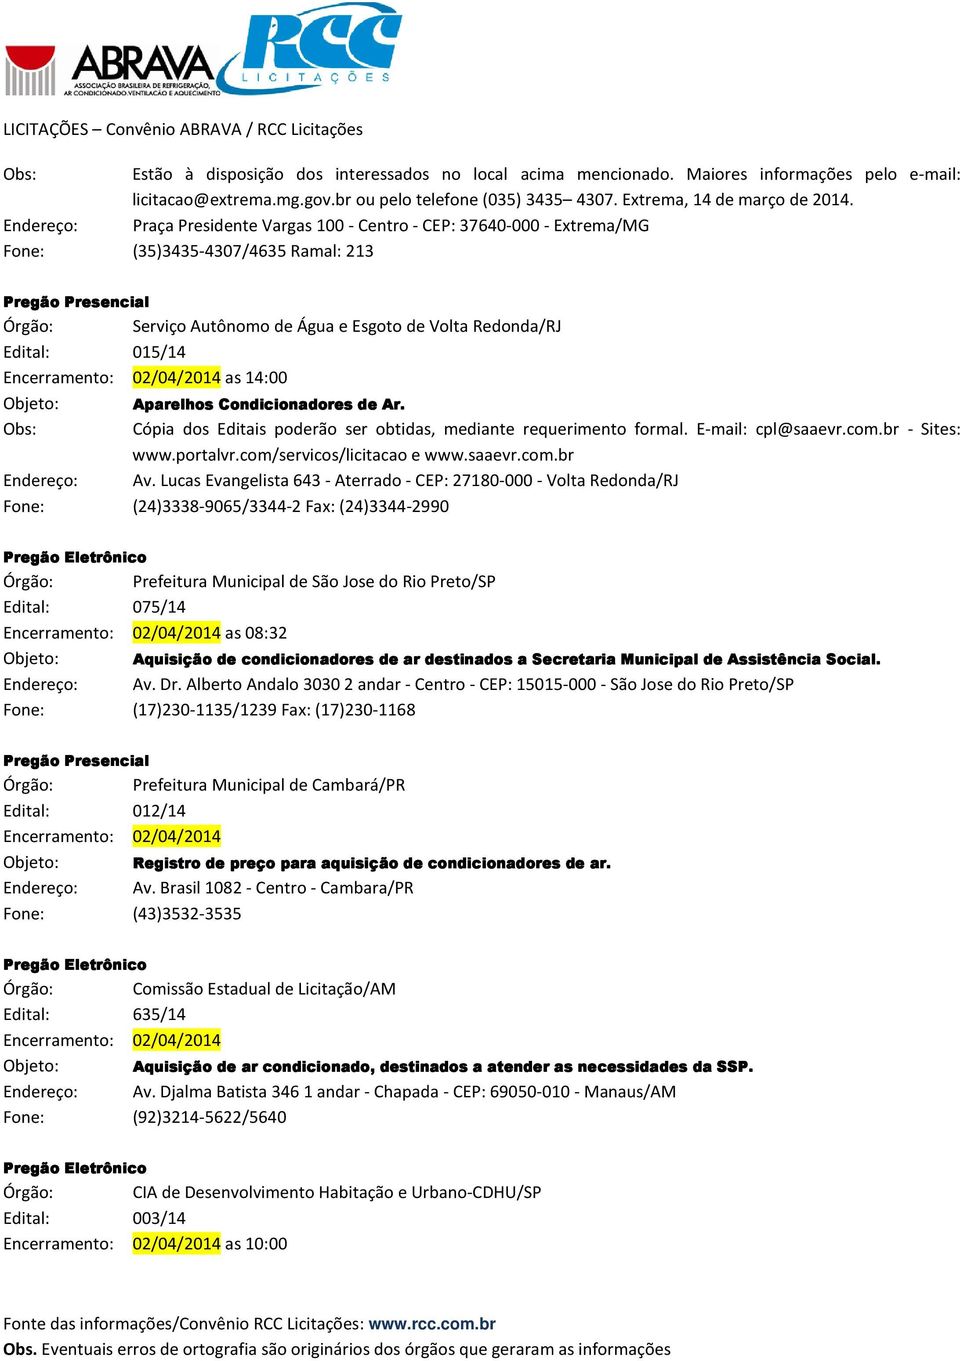 Encerramento: 02/04/2014 as 14:00 Aparelhos Condicionadores de Ar. Obs: Cópia dos Editais poderão ser obtidas, mediante requerimento formal. E-mail: cpl@saaevr.com.br - Sites: www.portalvr.